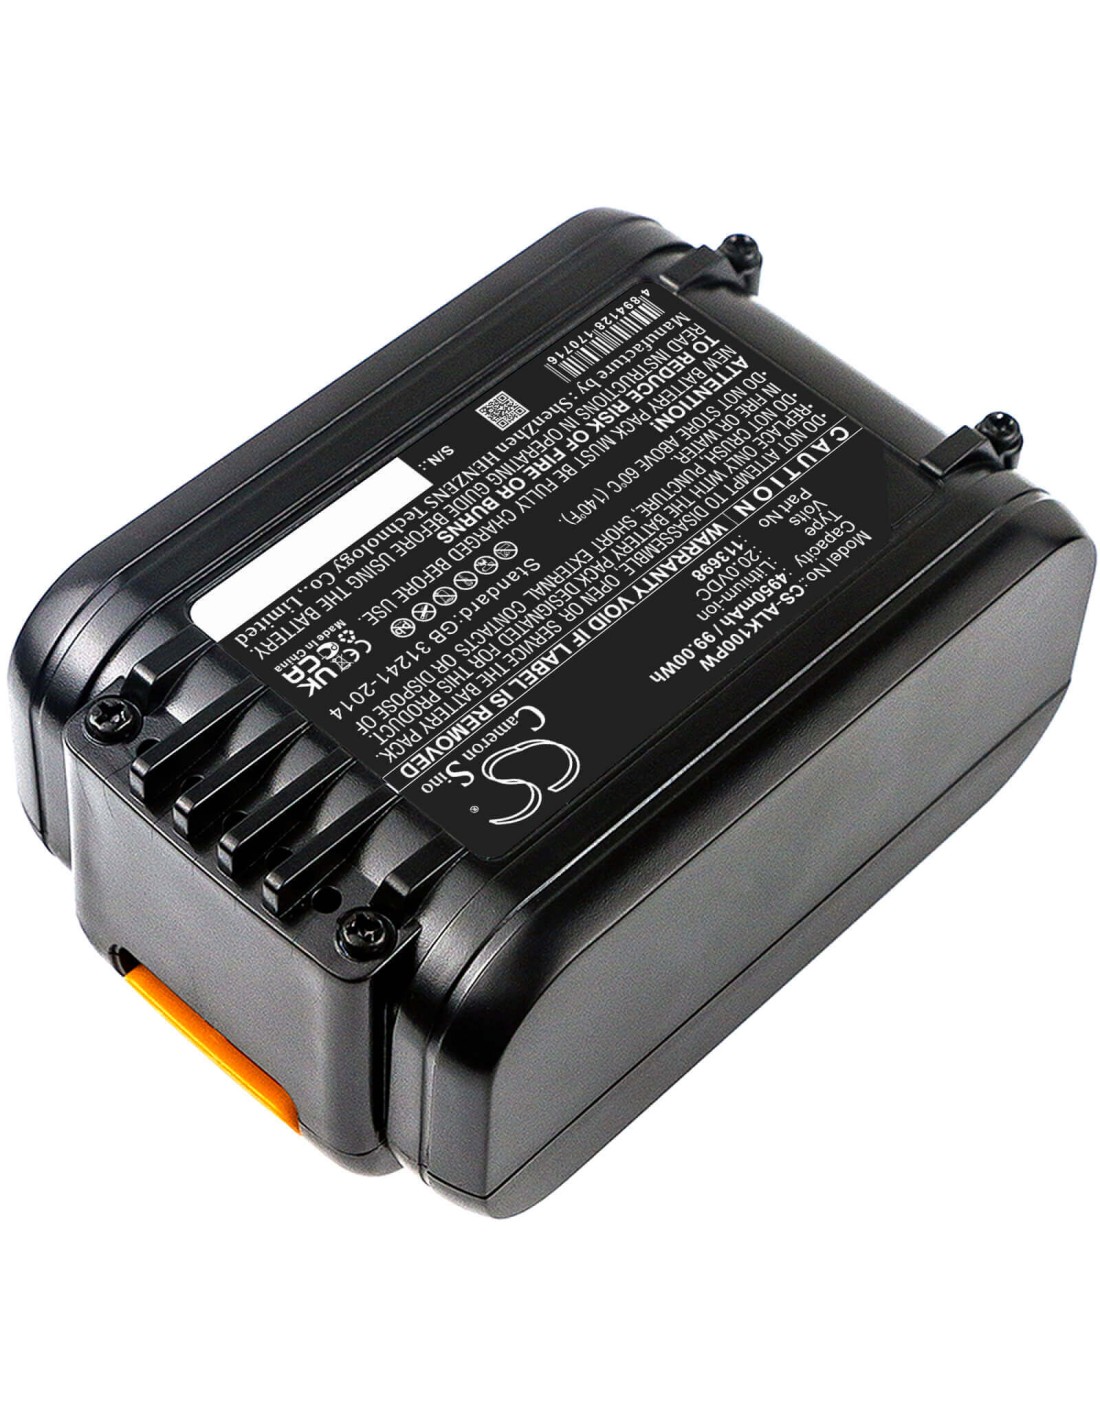 20.0V, Li-ion, 4950mAh, Battery fits Al-ko, Easy Flex 34.8 Li Lawnmower, Easy Flex Csa 2020, Easy Flex Csa 2020 Pole Pruner, 99.